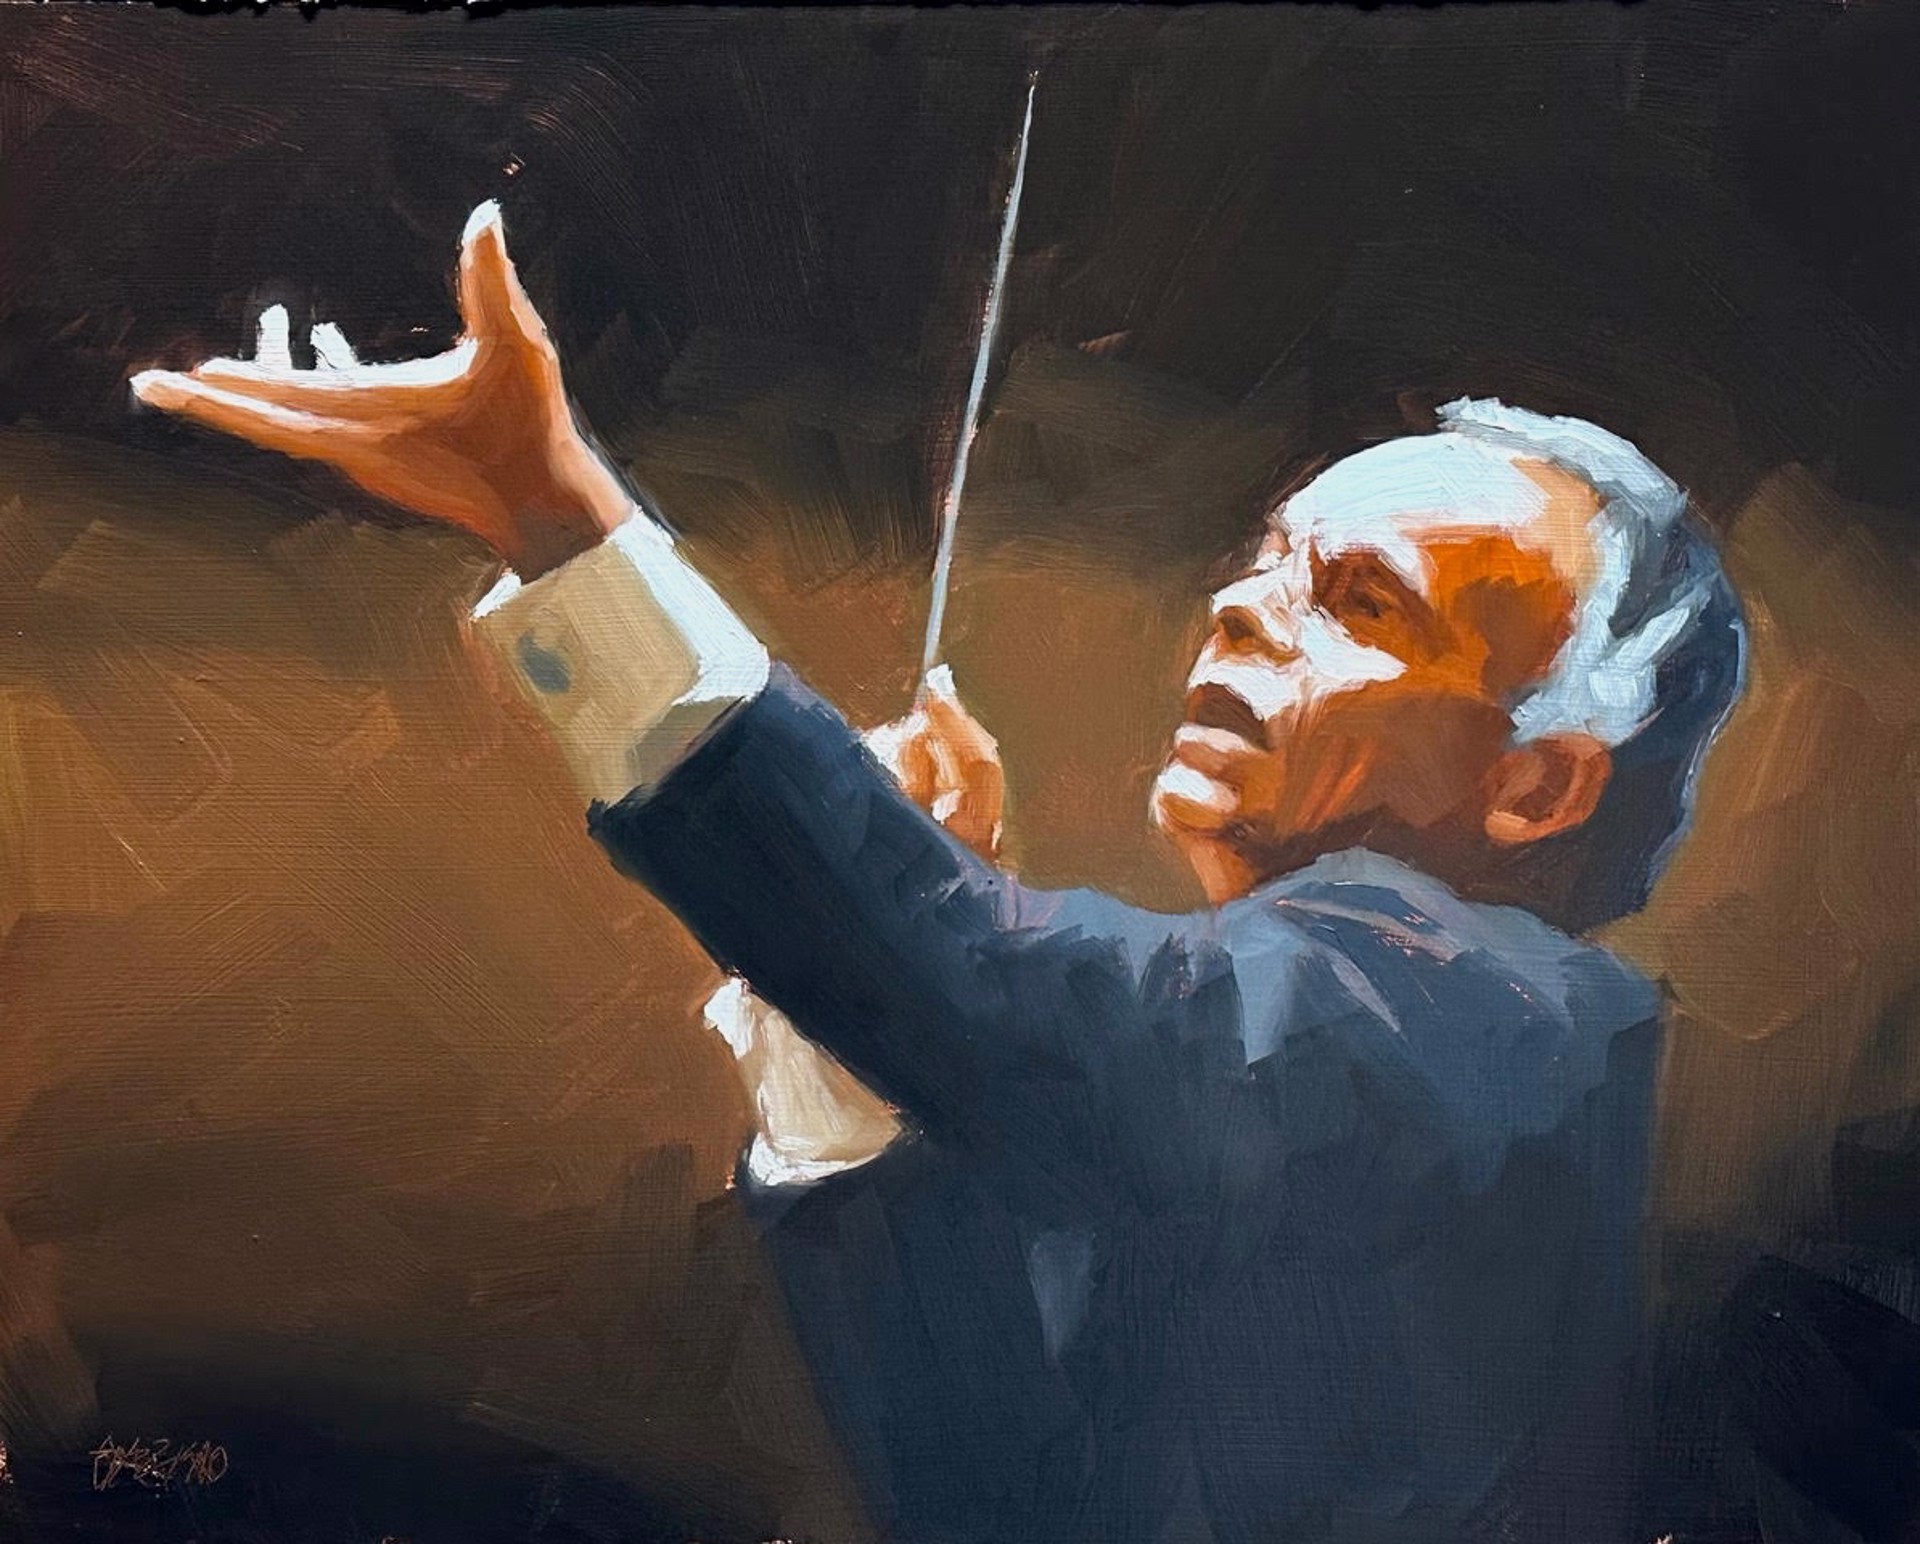 The Maestro by Dan Graziano